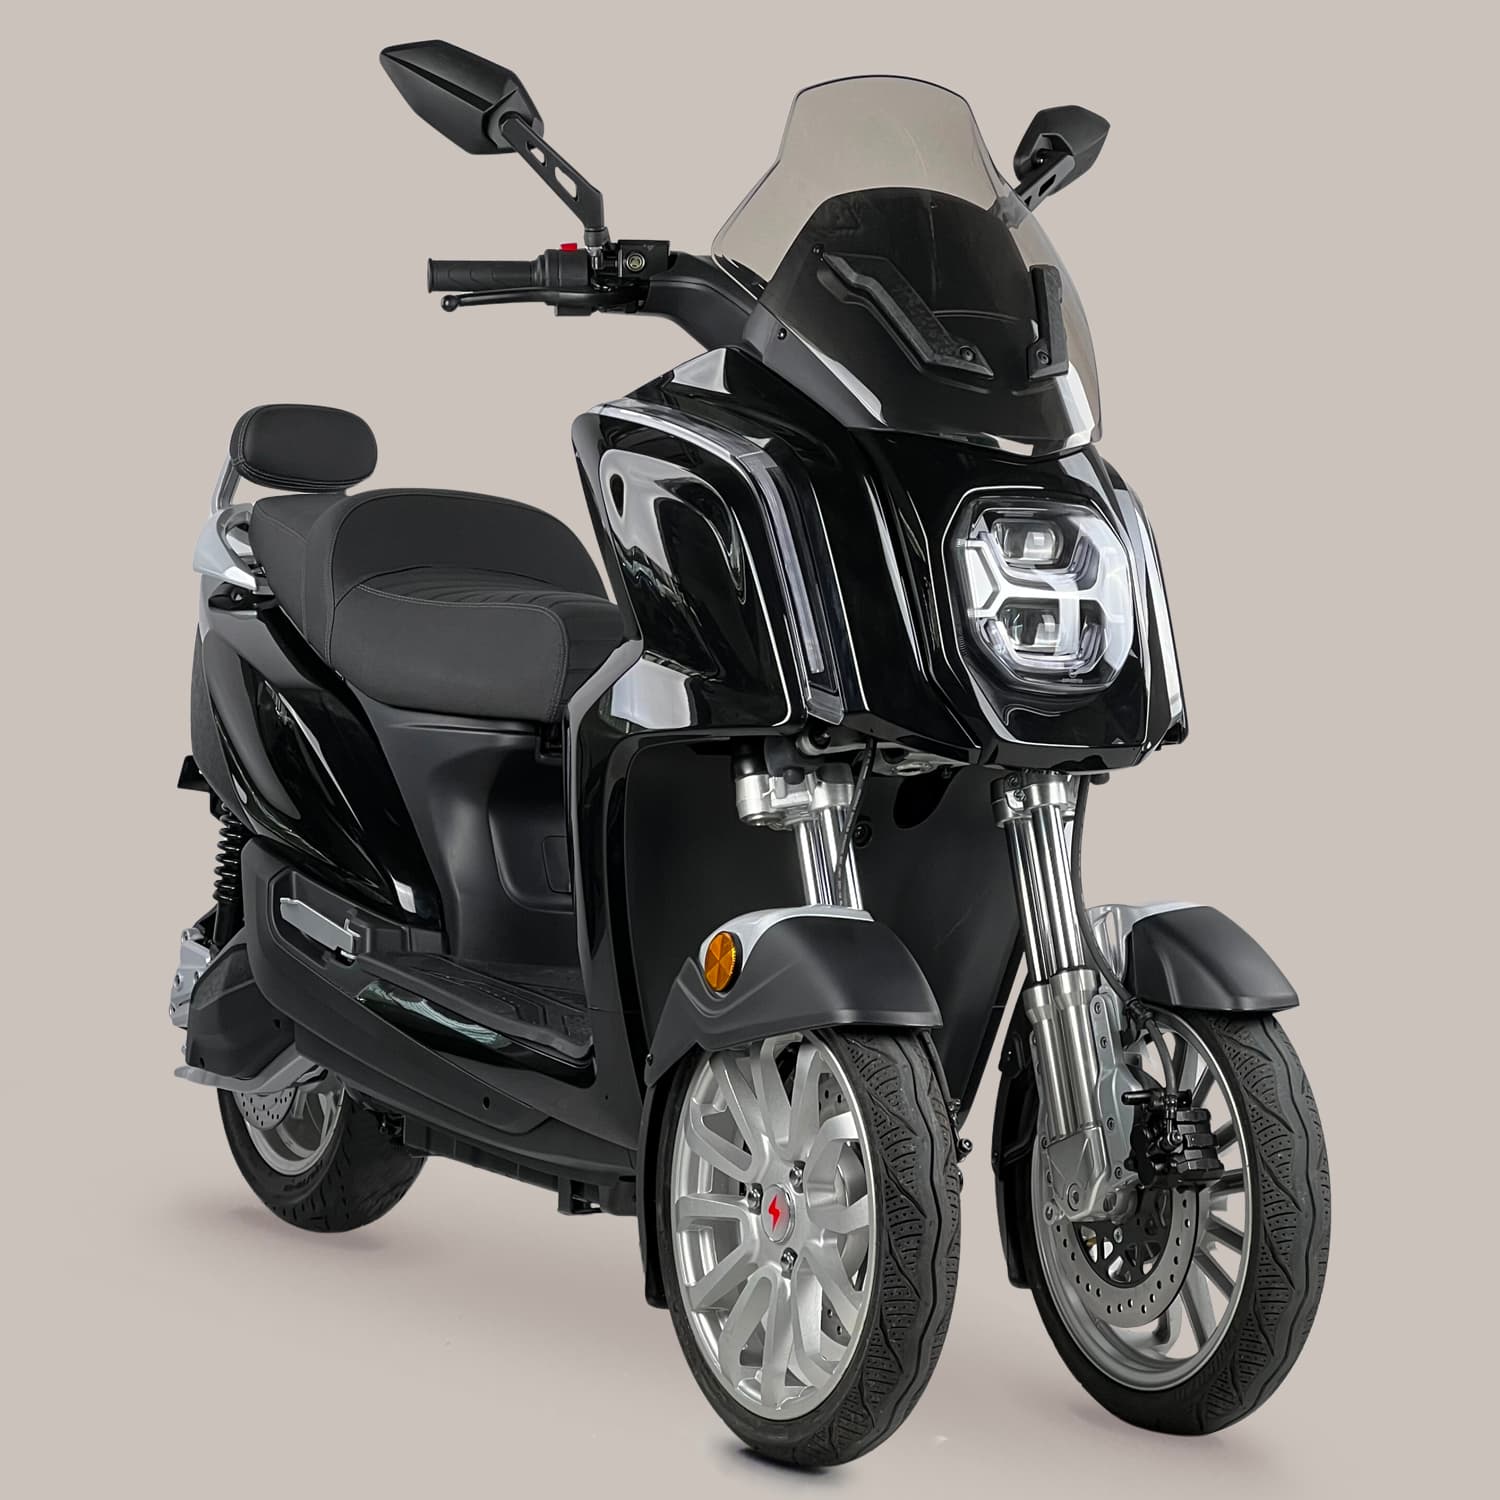 Achetez votre manchon scooter/cyclo pour votre Moto - Maxi Pièces 50